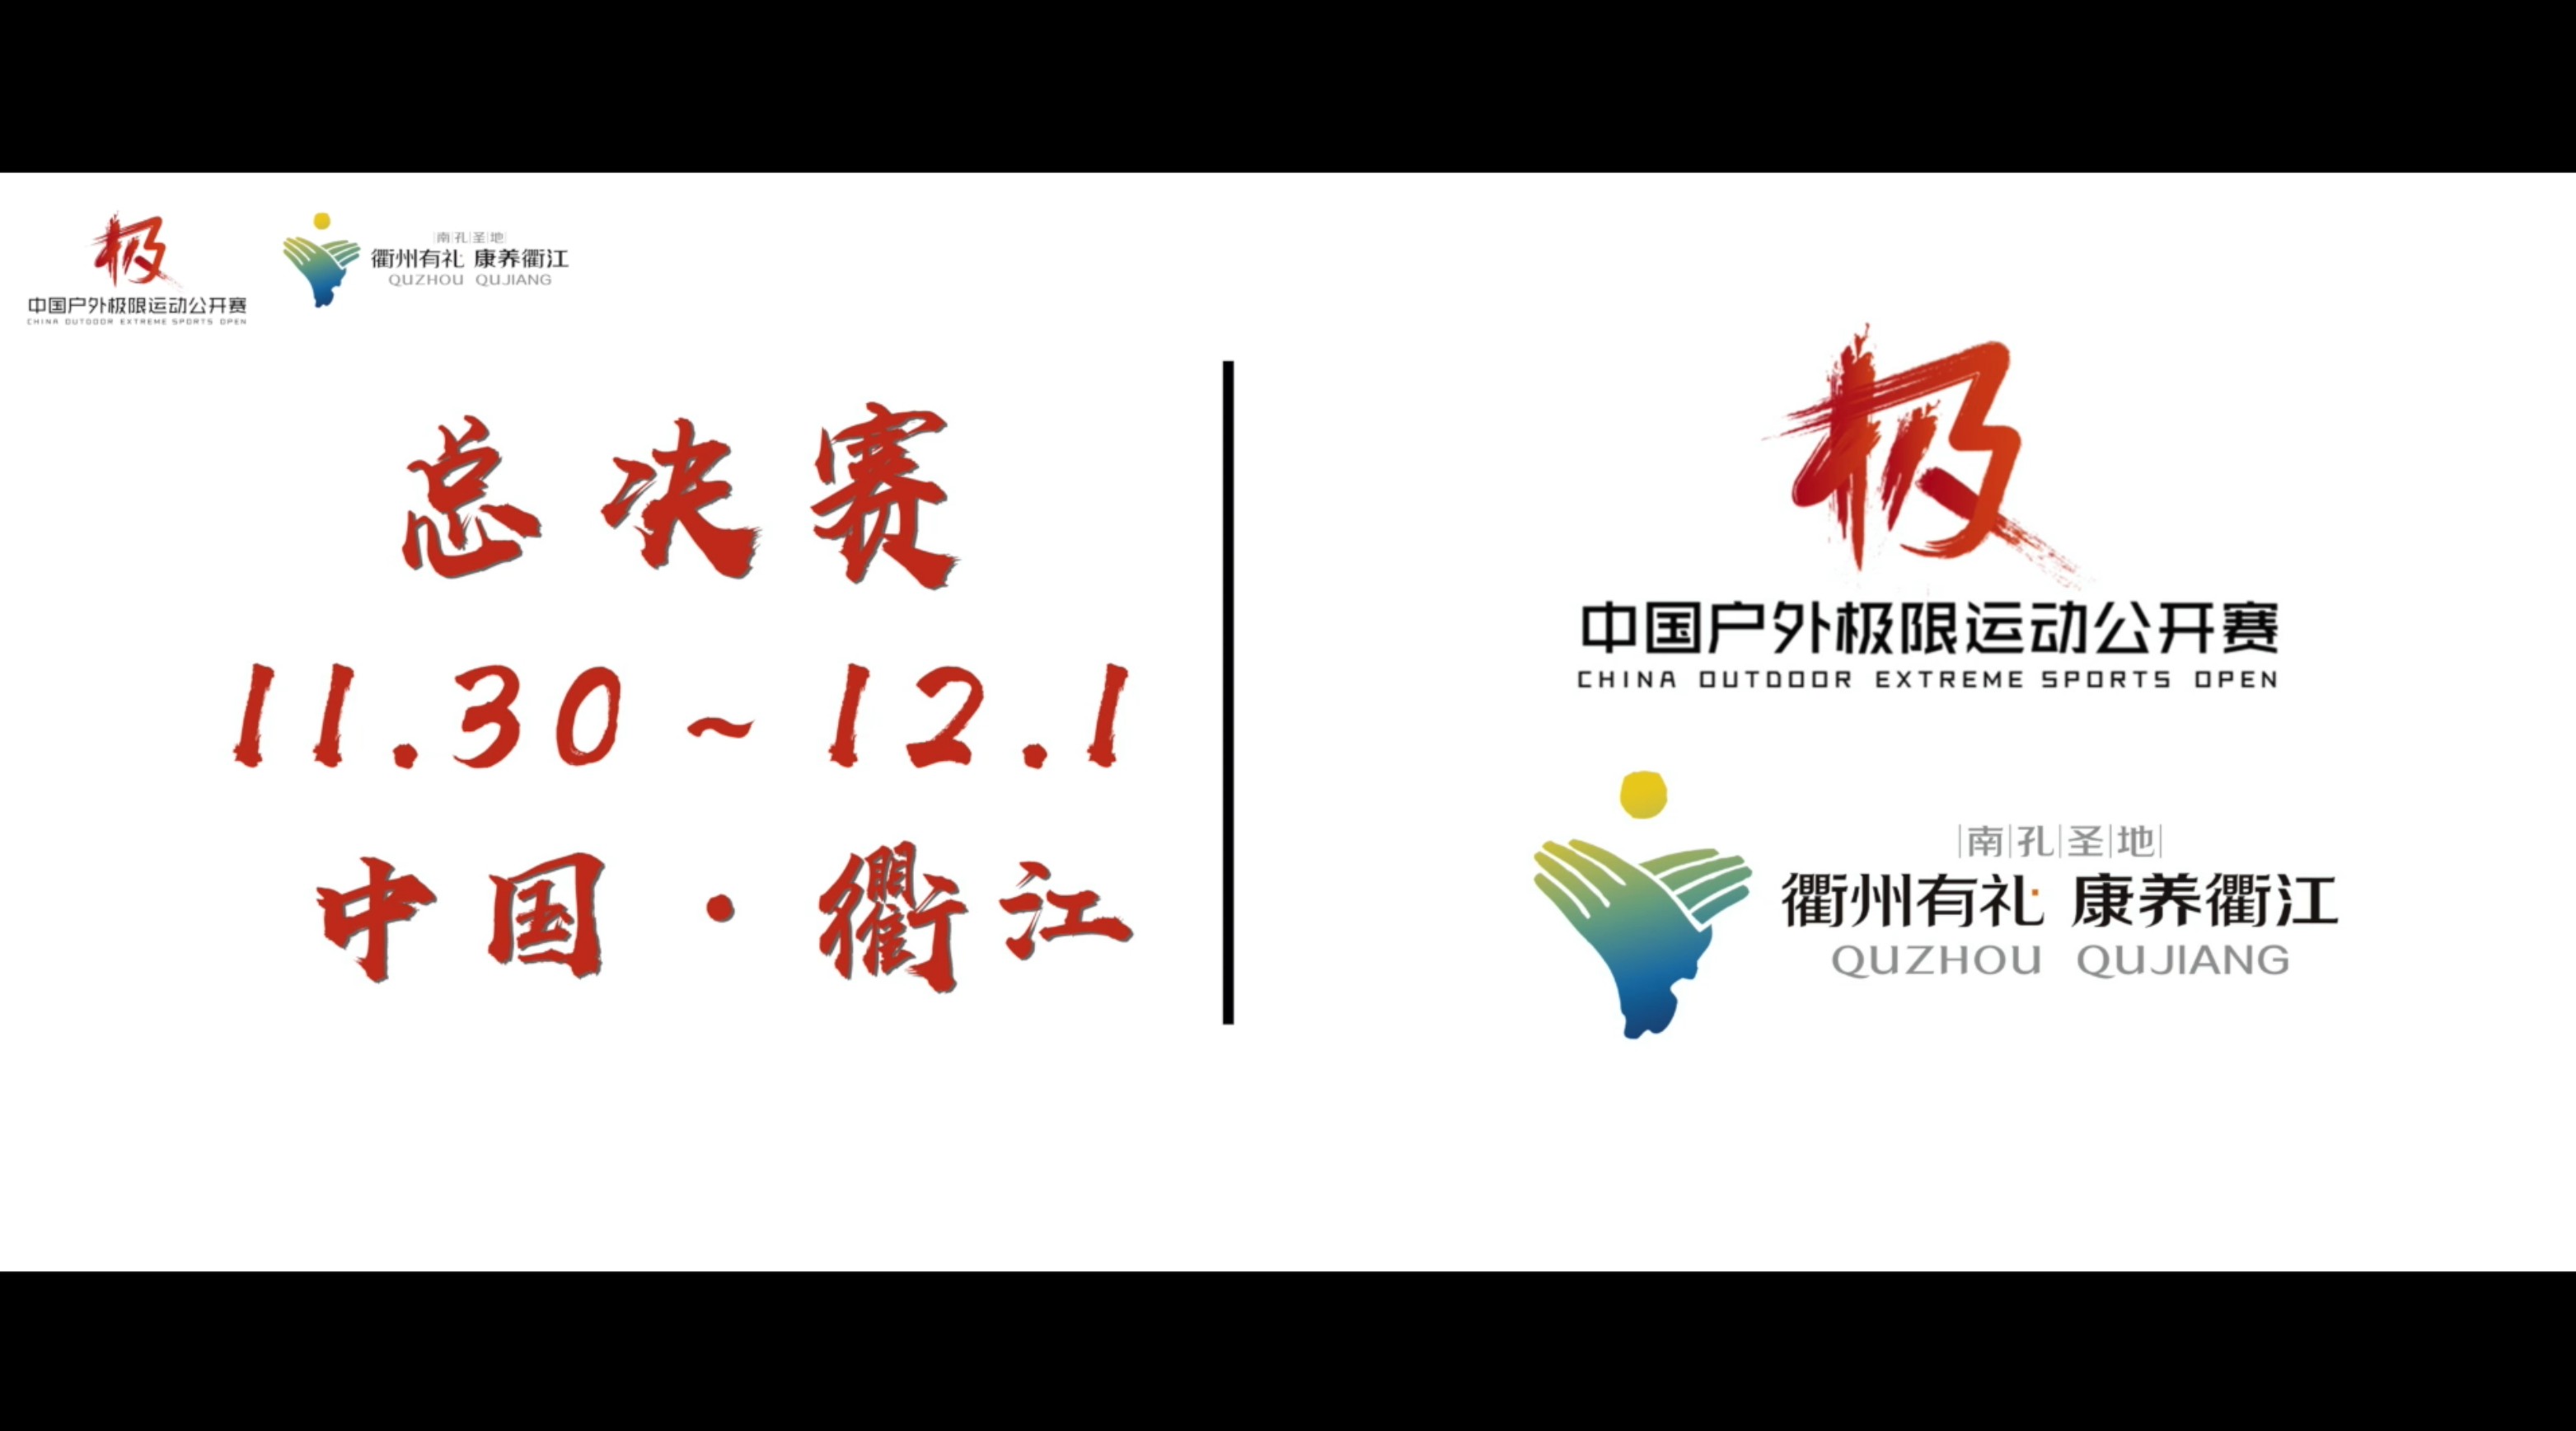 2019中国户外极限运动公开赛总决赛宣传片 